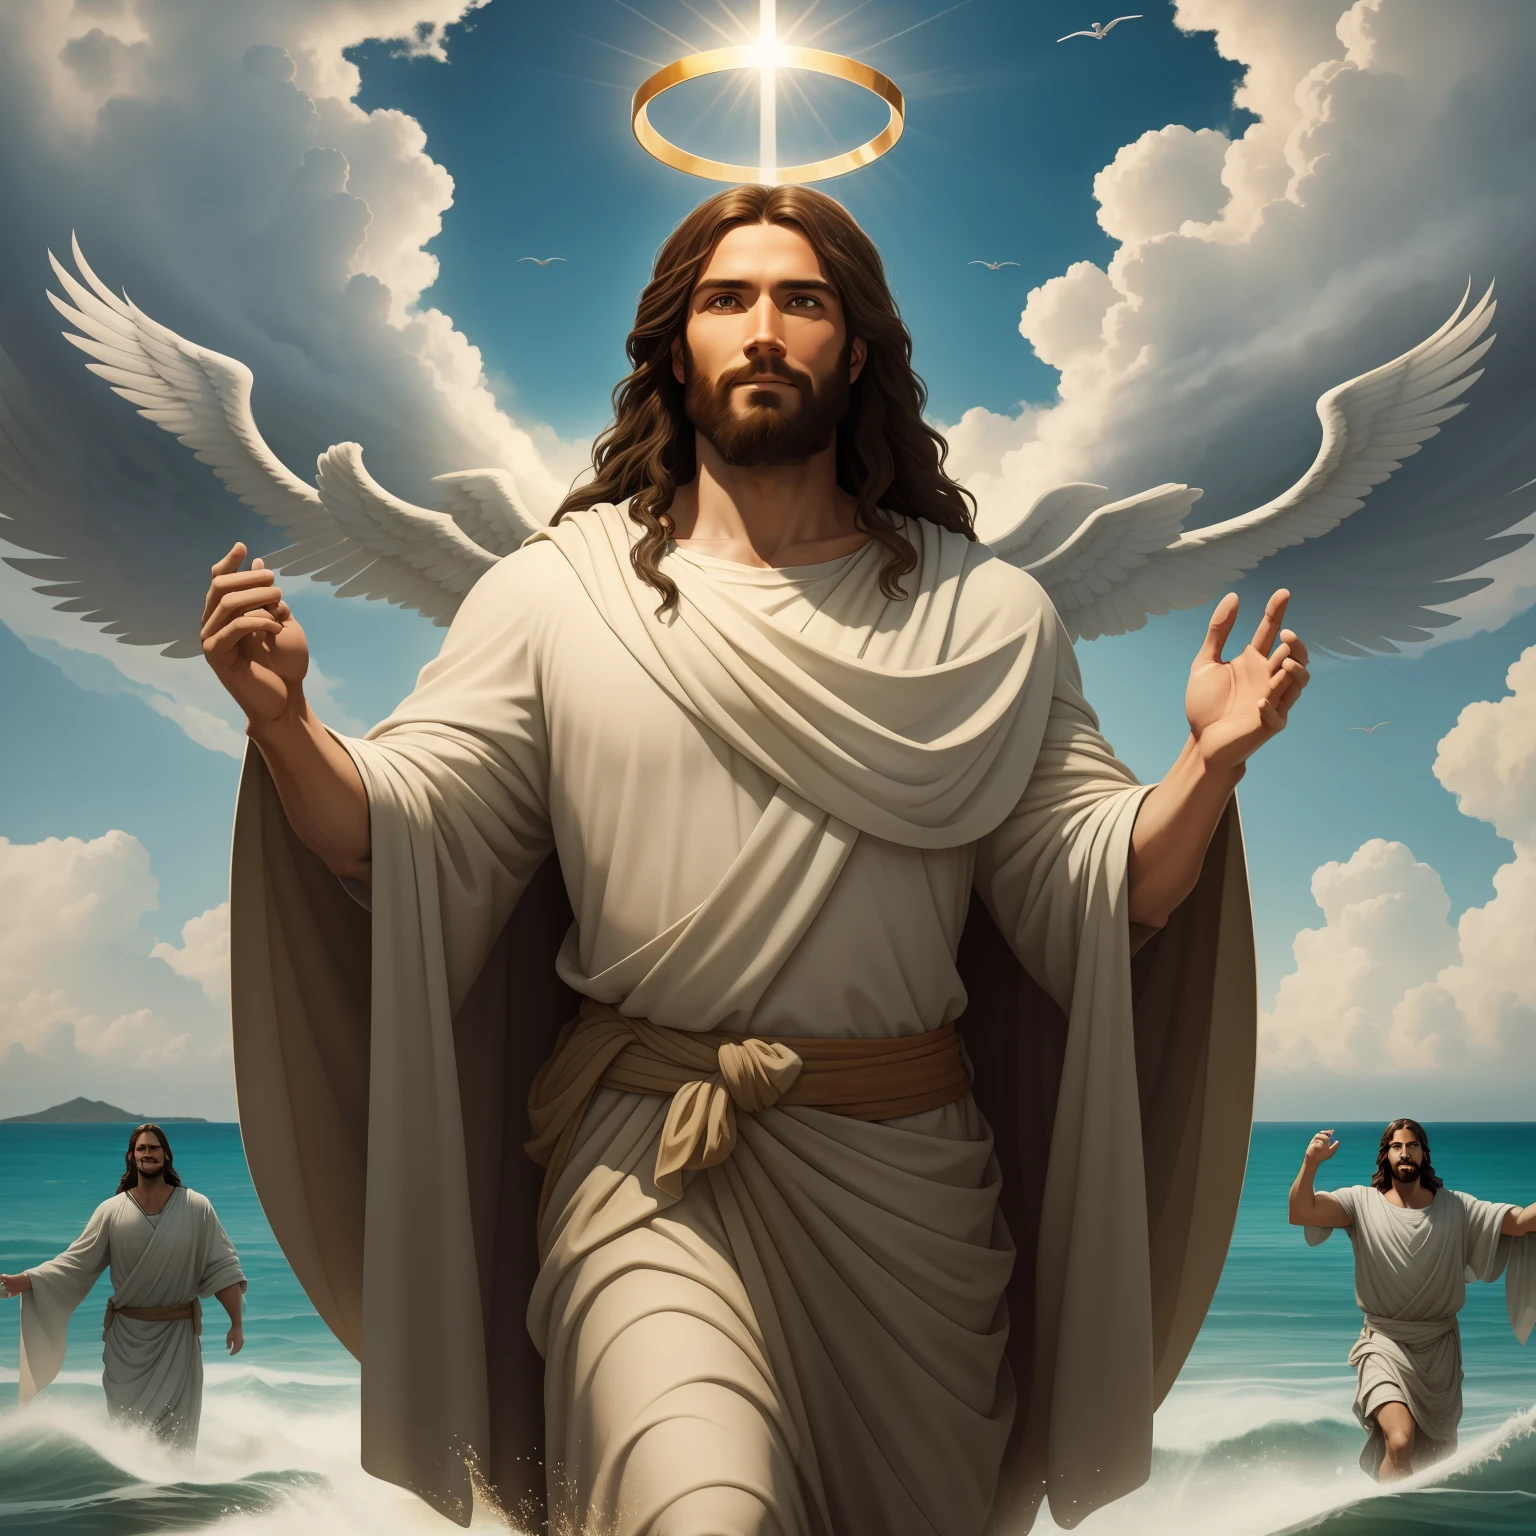 พระเยซูทรงเดินบนน้ำ with a flying cloud in the background, พระเยซูทรงเดินบนน้ำ, ภาพประกอบในพระคัมภีร์, การเป็นตัวแทนในพระคัมภีร์ที่ยิ่งใหญ่, บังคับให้เขาหนี, ออกมาจากมหาสมุทร, ! จับมือกัน!, ขึ้นฝั่ง, เทพเจ้าแห่งมหาสมุทร, การแสดงที่สวยงาม, โมเดล 3 มิติ 8k, เหมือนจริง,
a 3D Realistic of พระเยซู with a halo in the sky, พระเยซู christ, ยิ้มอยู่ในสวรรค์, portrait of พระเยซู christ, พระเยซู face, 33 เทพเจ้าหนุ่มผู้ยิ่งใหญ่, ภาพเหมือนของเทพเจ้าแห่งสวรรค์, เกร็ก โอลเซ่น, gigachad พระเยซู, พระเยซู of nazareth, พระเยซู, ใบหน้าของพระเจ้า, พระเจ้ากำลังมองมาที่ฉัน, เขาทักทายคุณอย่างอบอุ่น, เขามีความสุข, ภาพประจำตัว